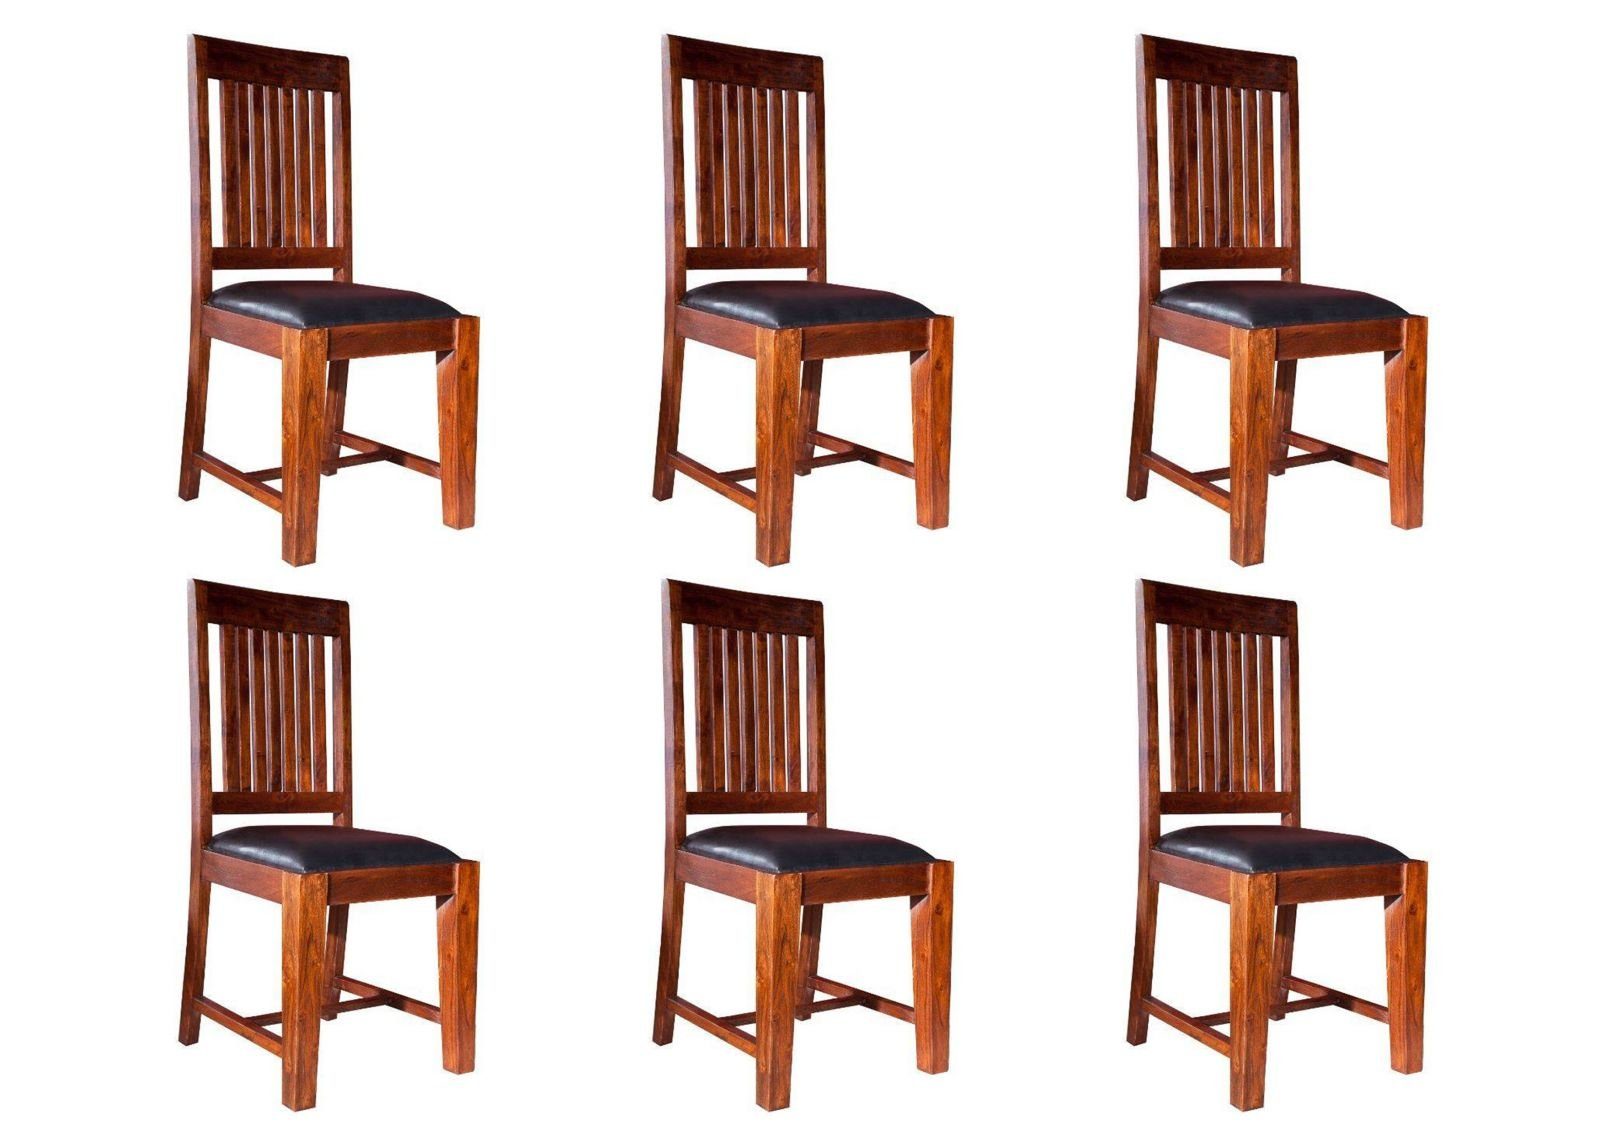 Massivmoebel24 Holzstuhl OXFORD Stuhl schwarz mit nougat Akazie dunkelbraun Set #15 Polster 6er 45x50x100